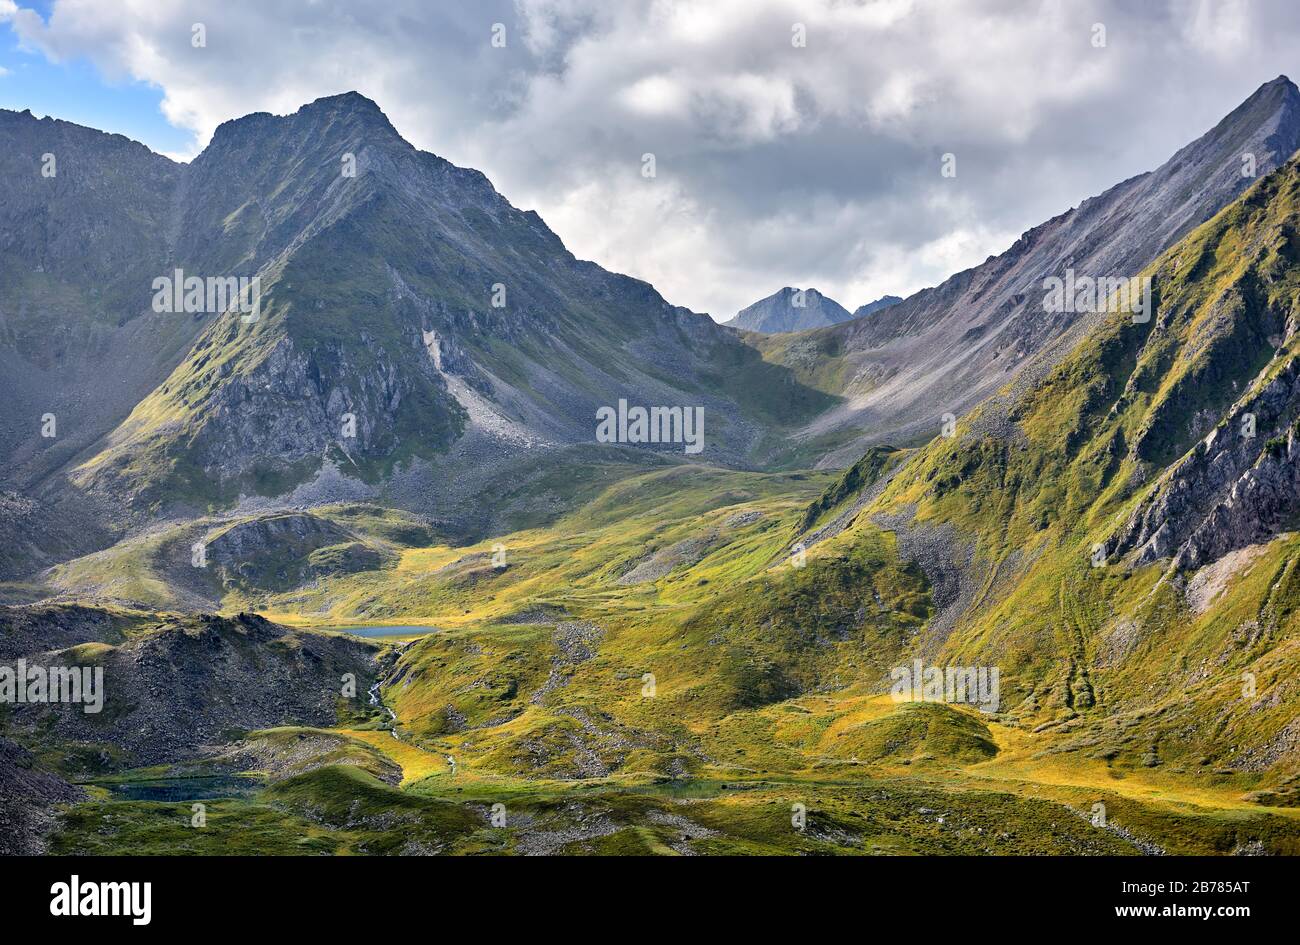 Alpentundra und Seen am Ufer des sibirischen Flusses. Der obere Teil des Gebirgstals ist glazialen Ursprungs. Sonnenlicht beleuchtet ausgewählte Bereiche von Stockfoto